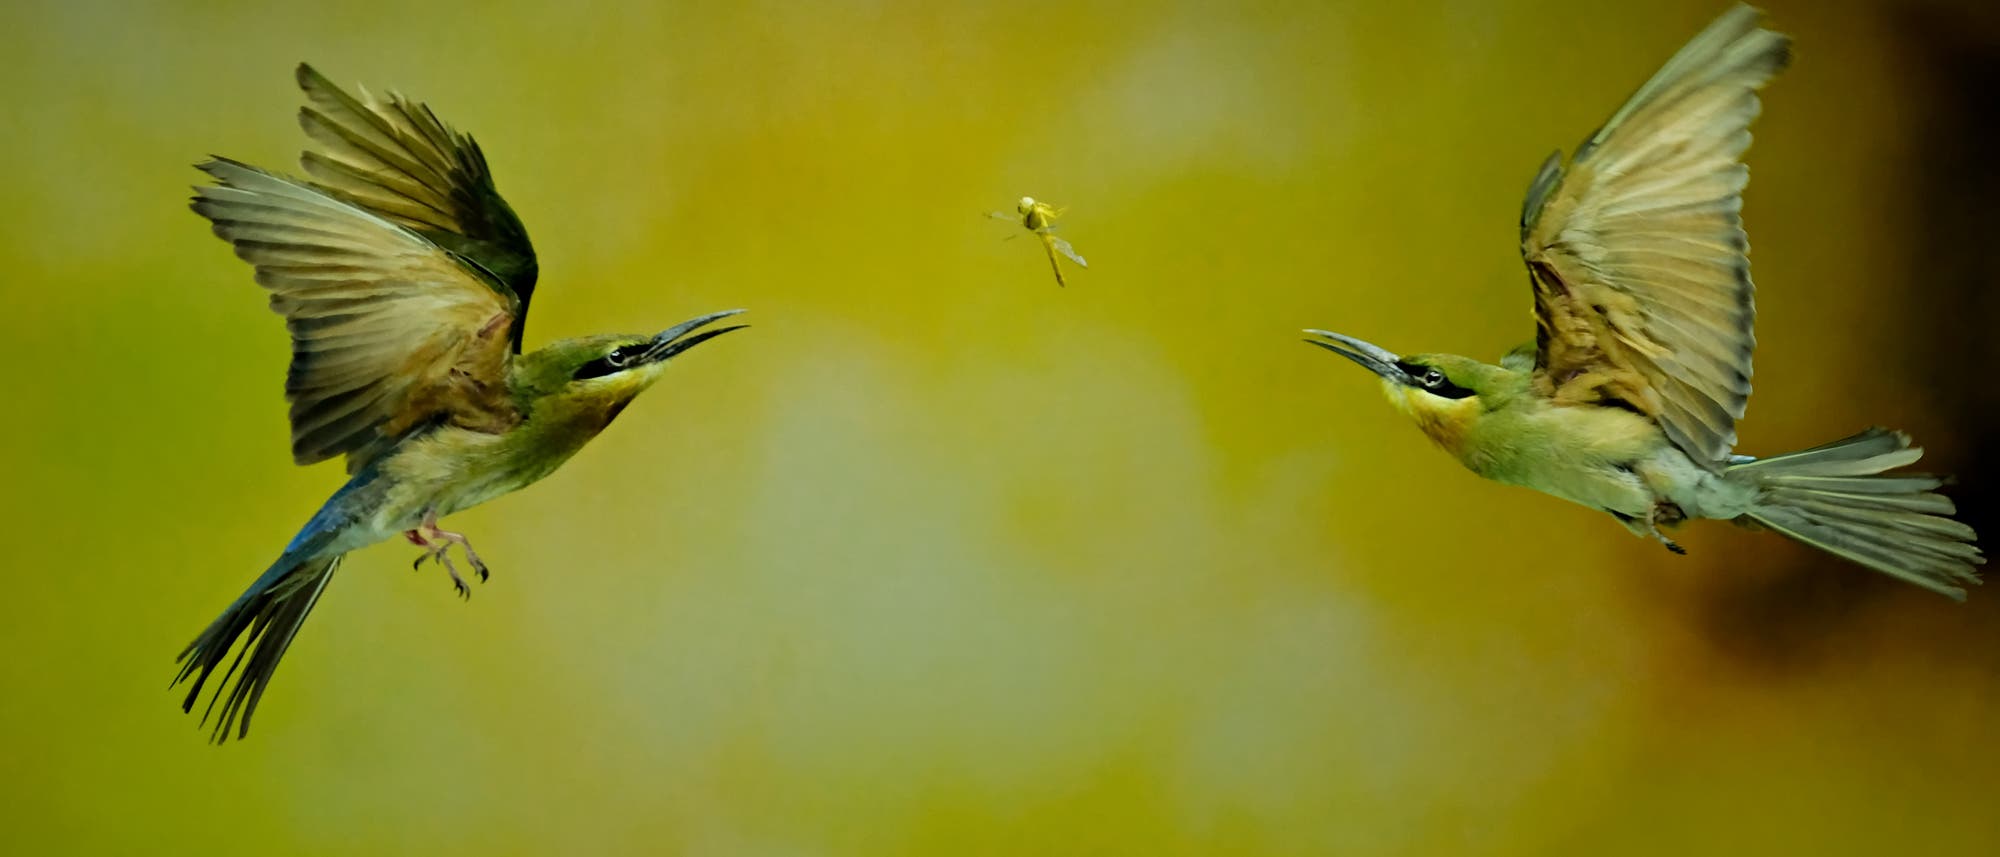 Zwei Bienenfresser stürzen sich im Flug von zwei Seiten auf eine Libelle